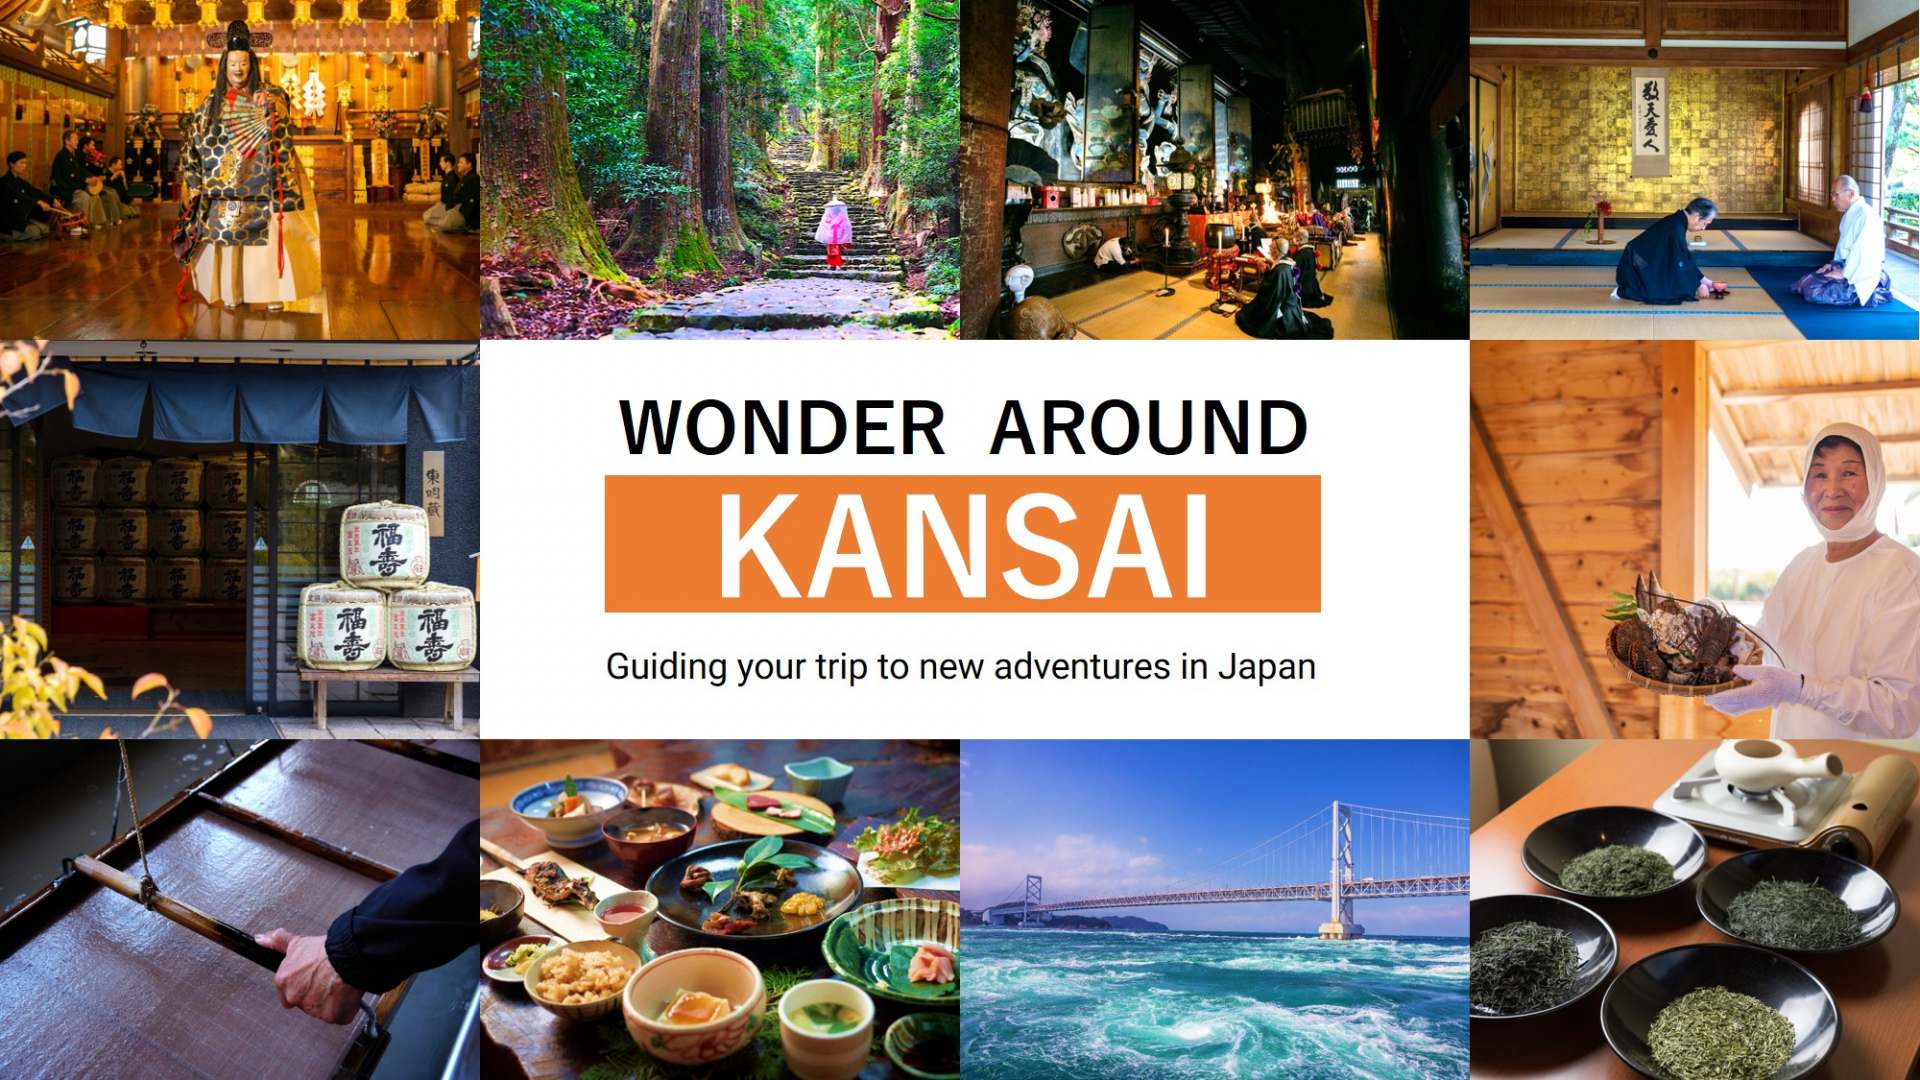 特别网站“WONDER AROUND KANSAI”现在提供了关西的特殊行程创意